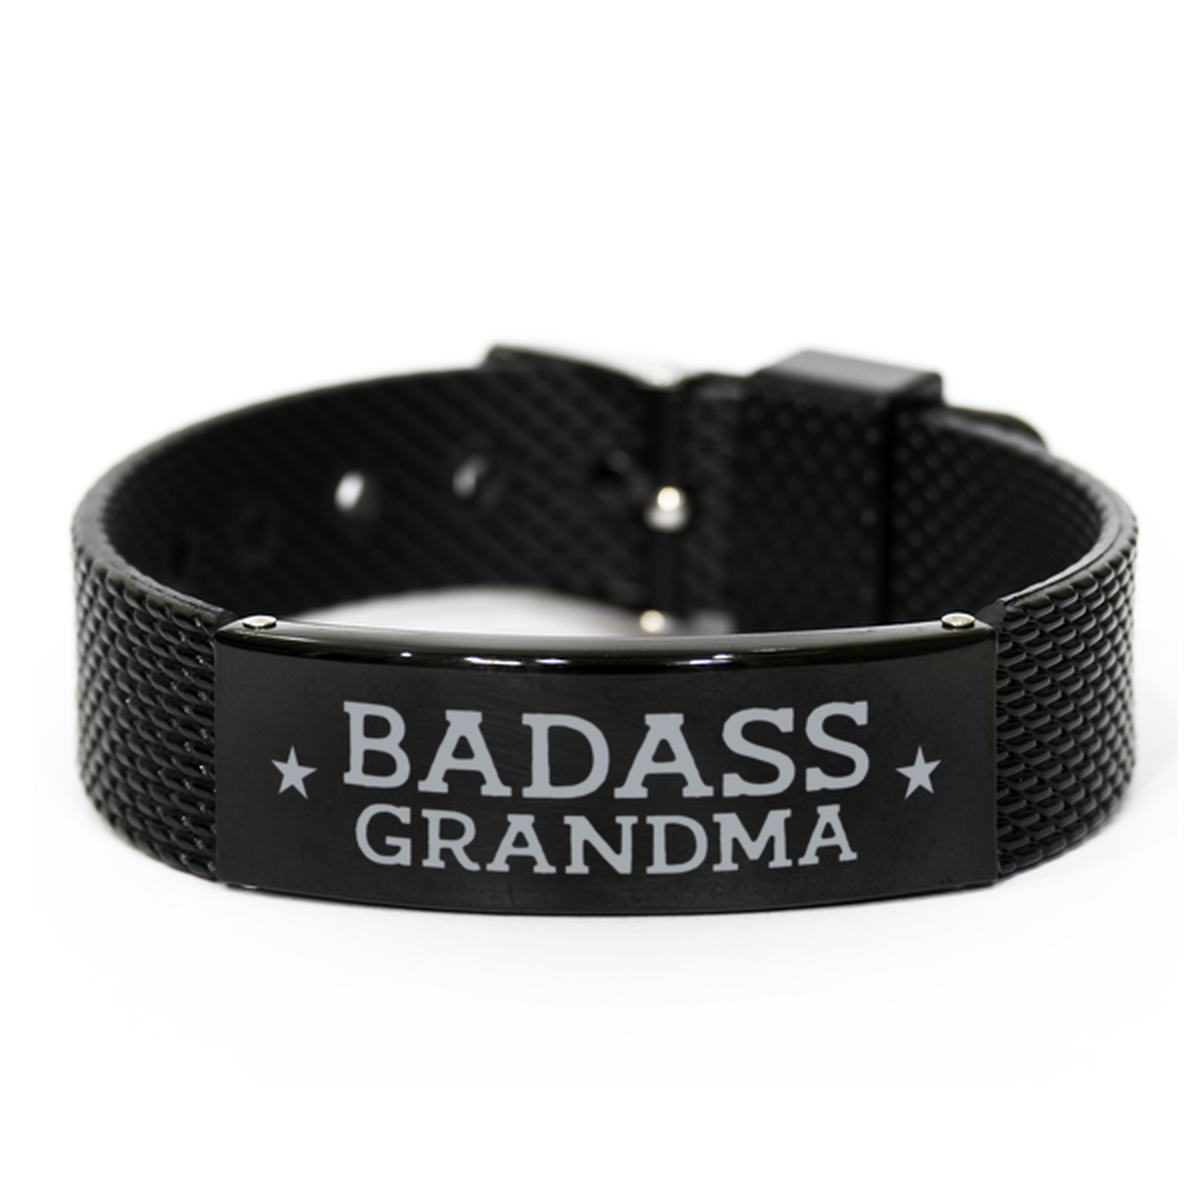 Grandma Black Shark Mesh Bracelet, Badass Grandma, Funny Family Gifts For Grandma From Granddaughter Grandson